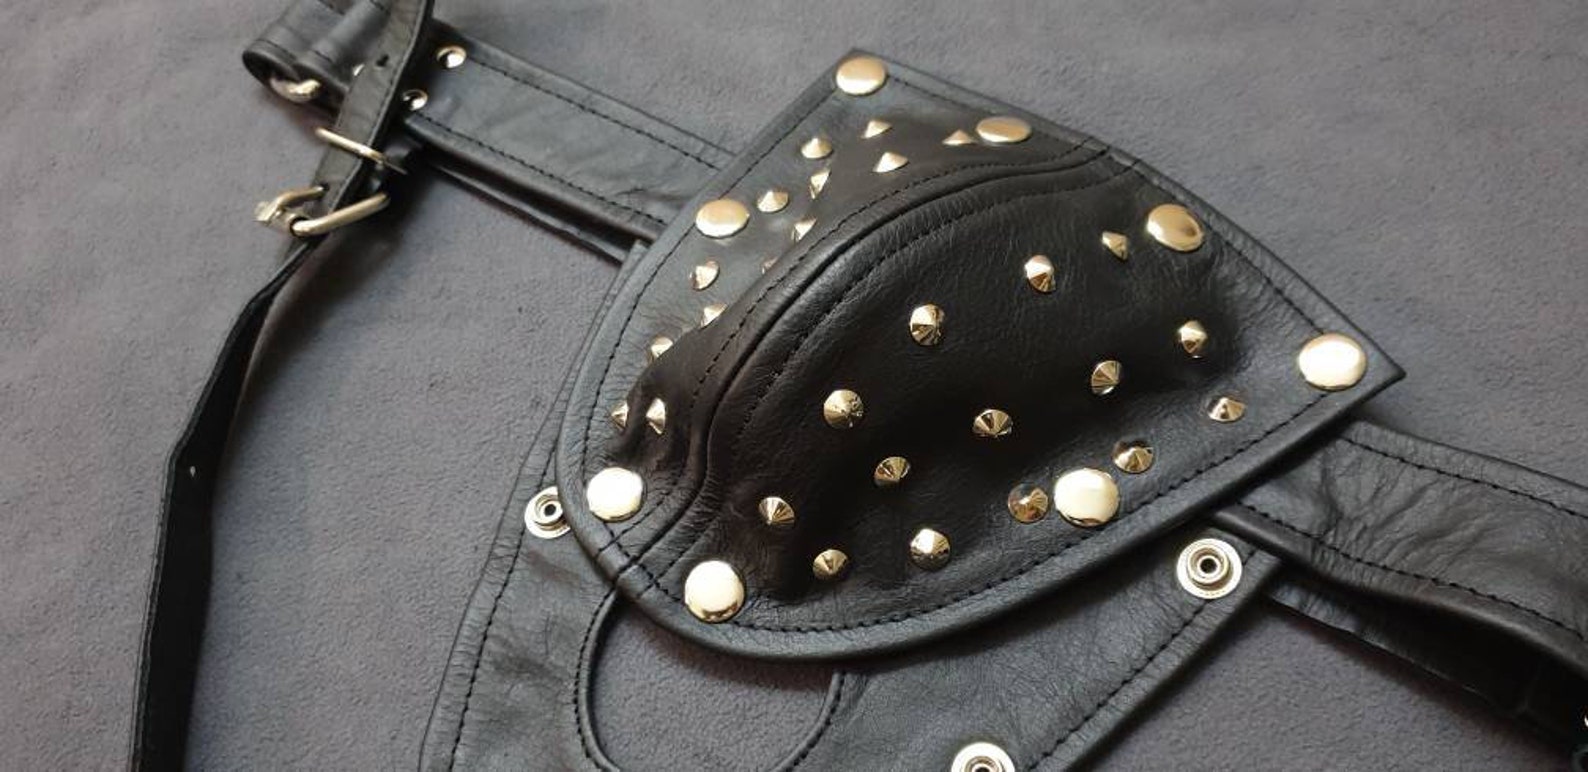 1 Thong Leather Slip String Lederhose Jockstrap spikes Leder | Etsy